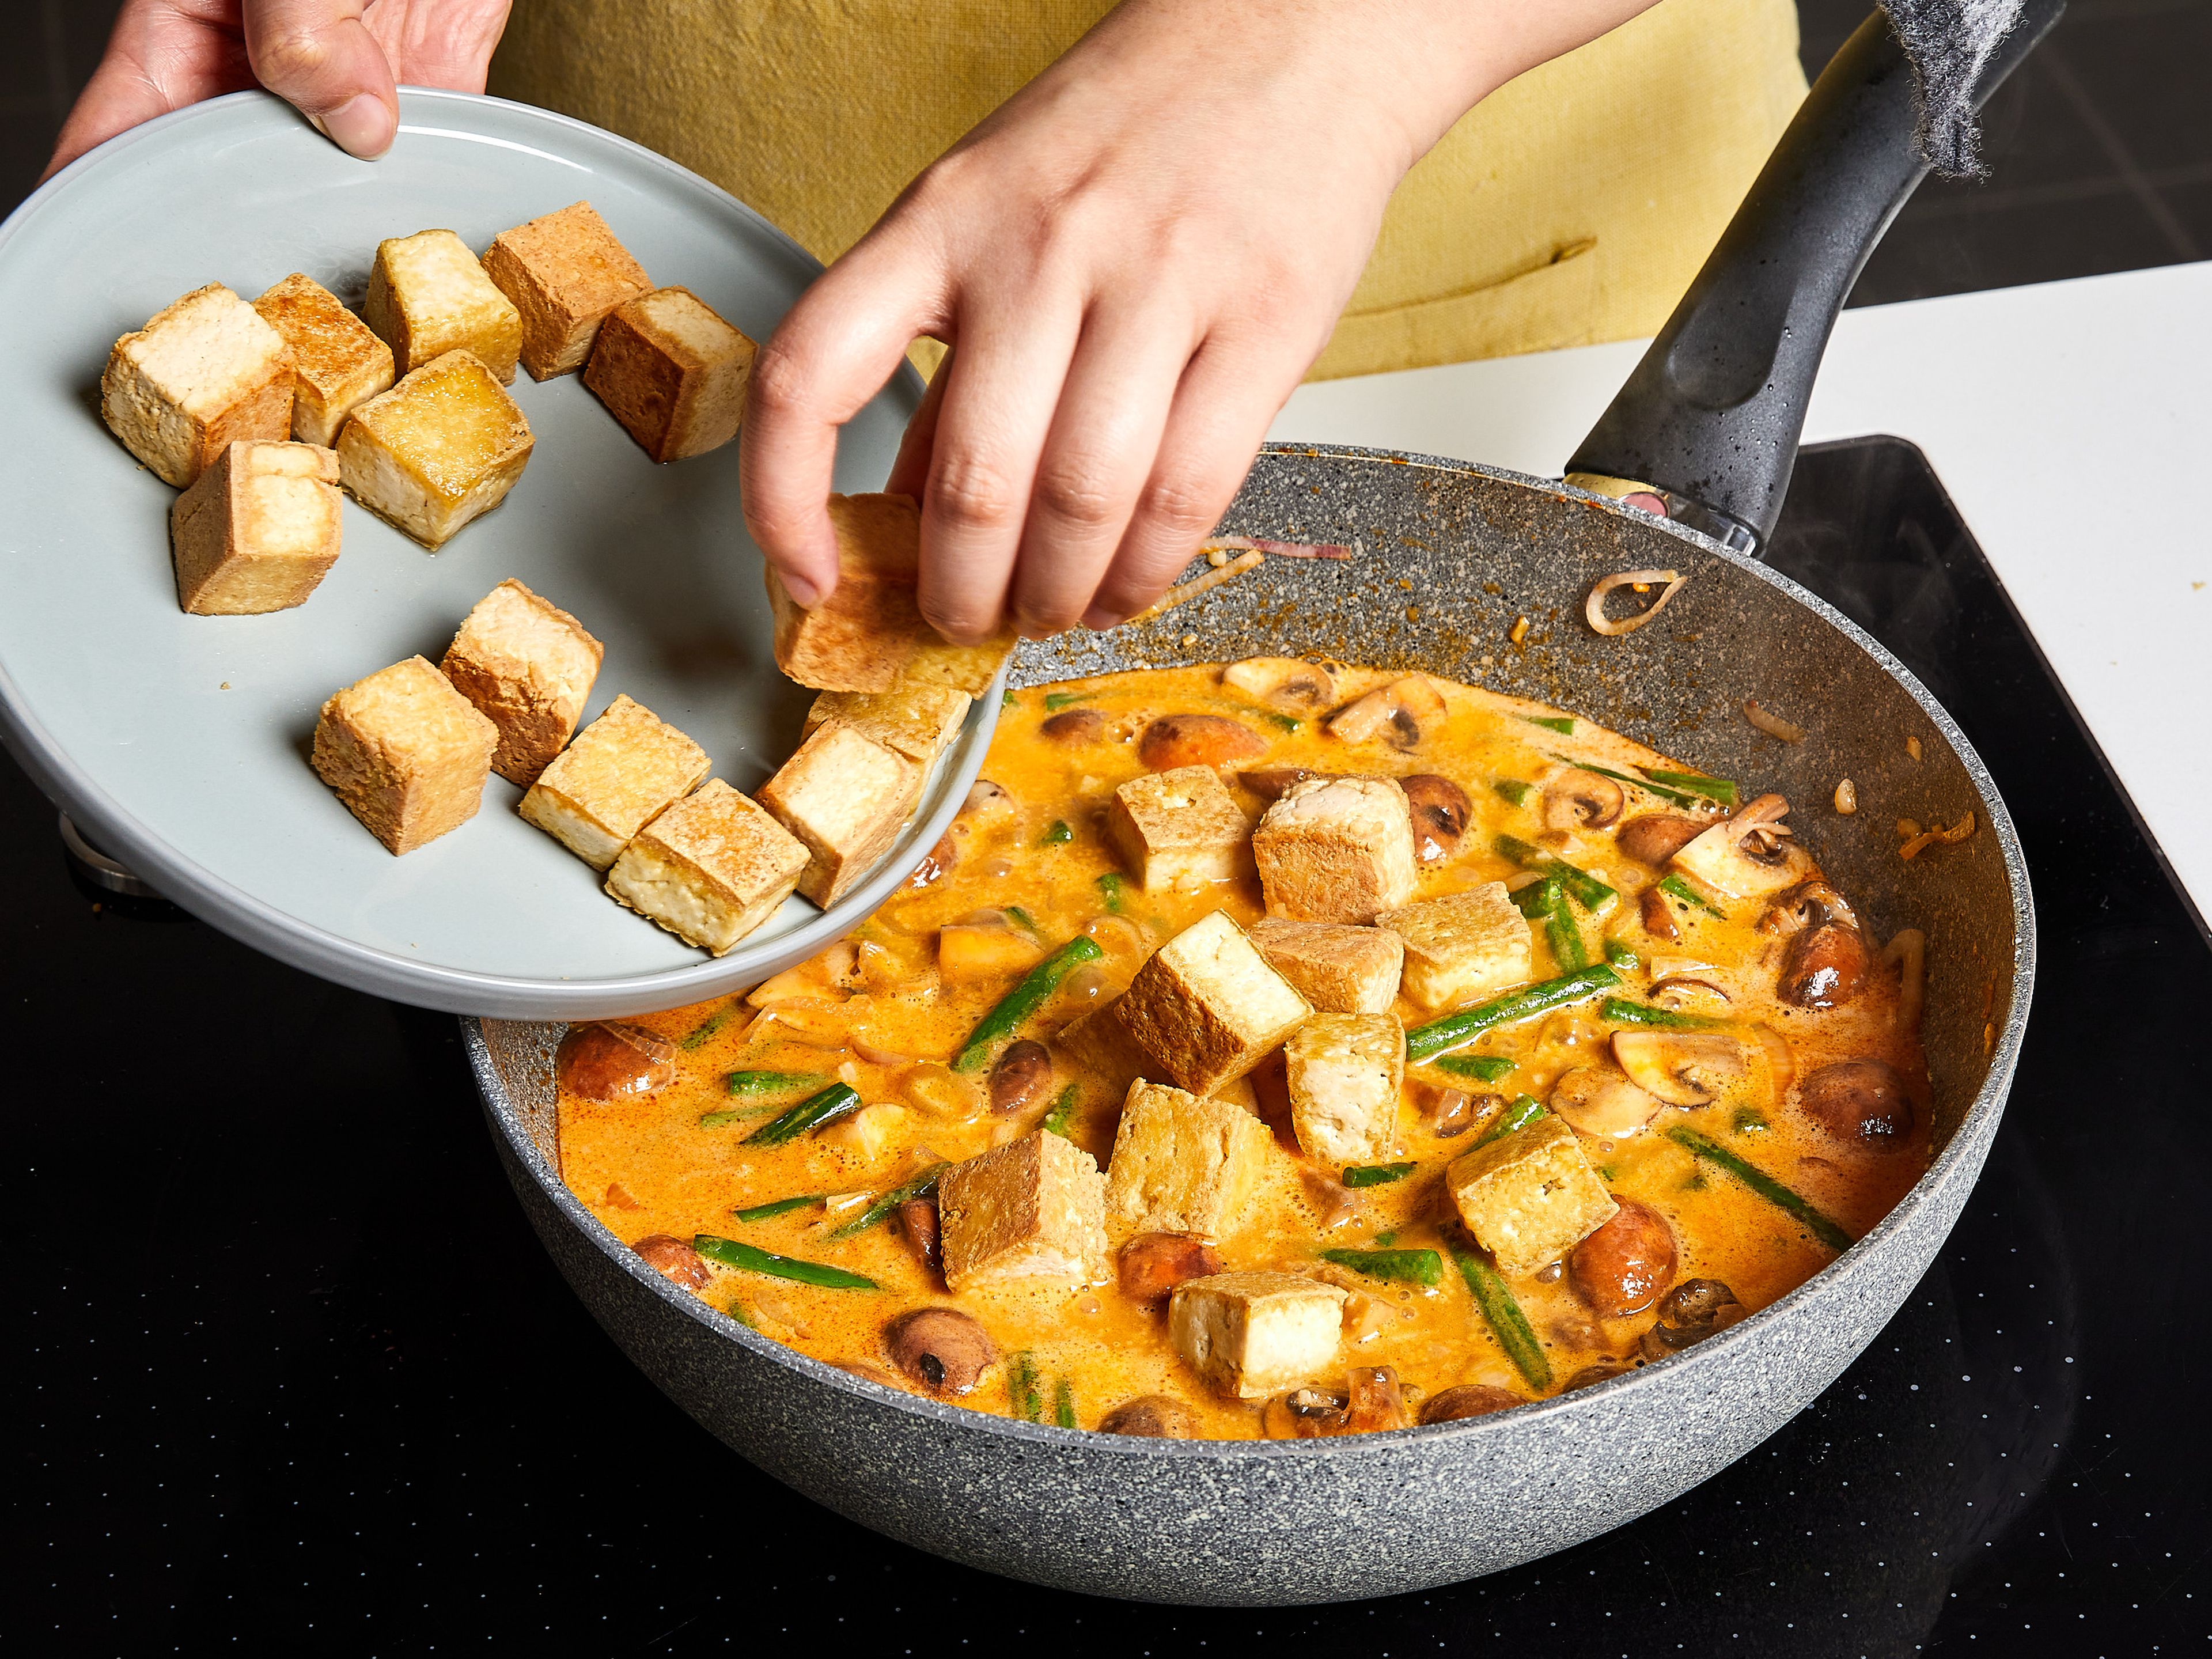 Dann Schalotten, Ingwer und Knoblauch hinzufügen und kurz anbraten, bis es duftet. Rote Currypaste dazugeben, ca. 1 Min. anbraten. Champignons dazugeben und ca. 2 Min. mitbraten. Mit Kokosmilch und Gemüsebrühe ablöschen und zum Köcheln bringen. Tofu hinzufügen und ca. 5–8 Min. köcheln lassen, bis das Curry etwas eindickt. Sojasauce und Zucker dazugeben und mit Salz abschmecken.